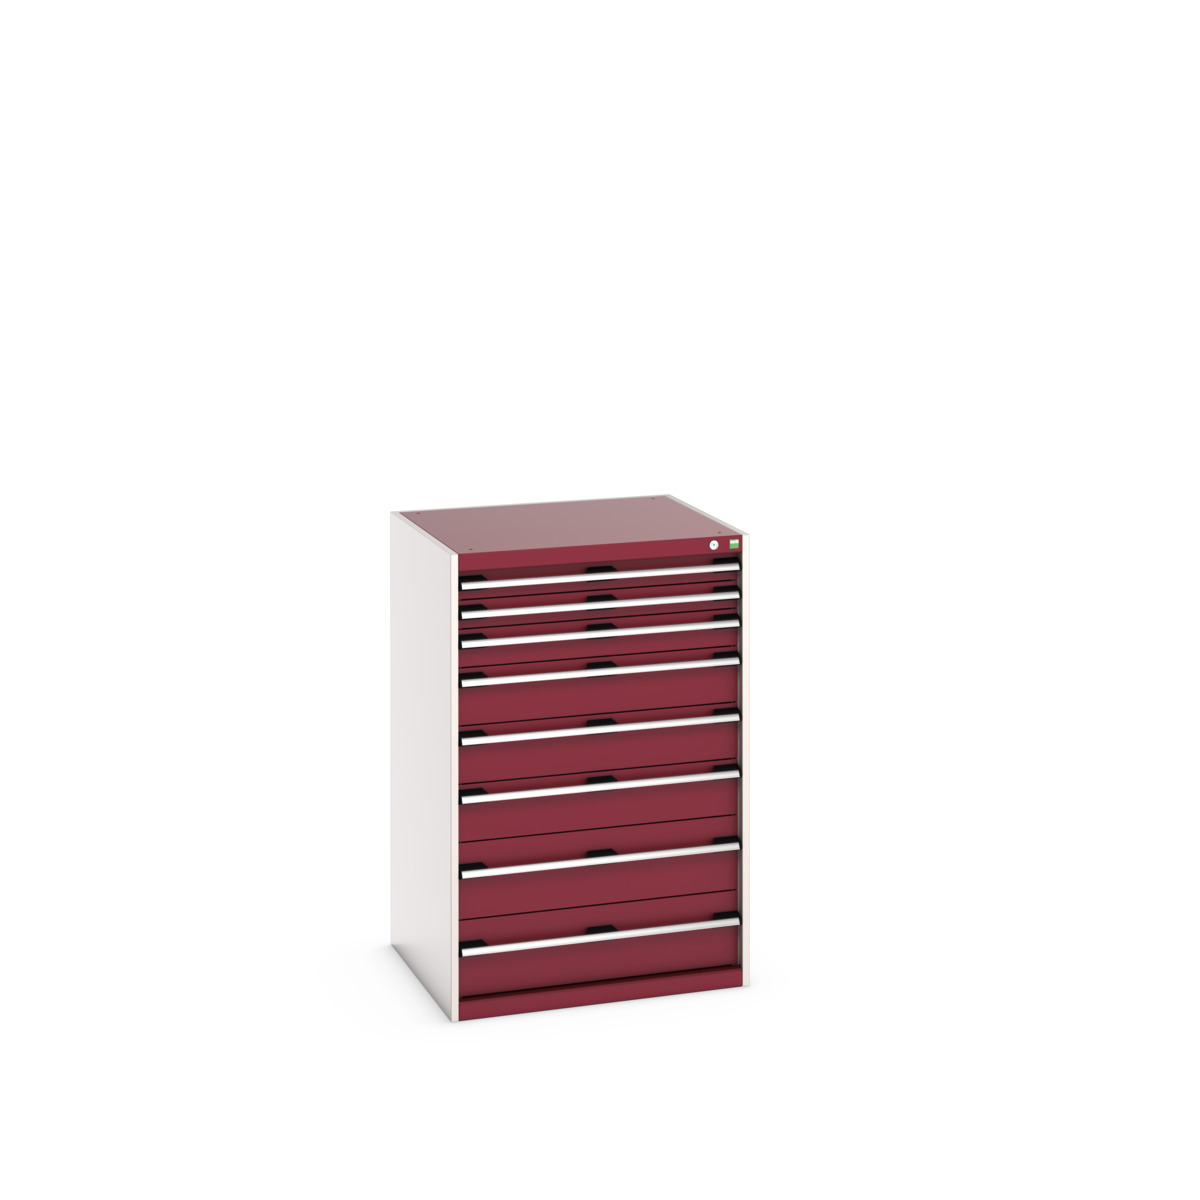 40028033.24V - cubio drawer cabinet